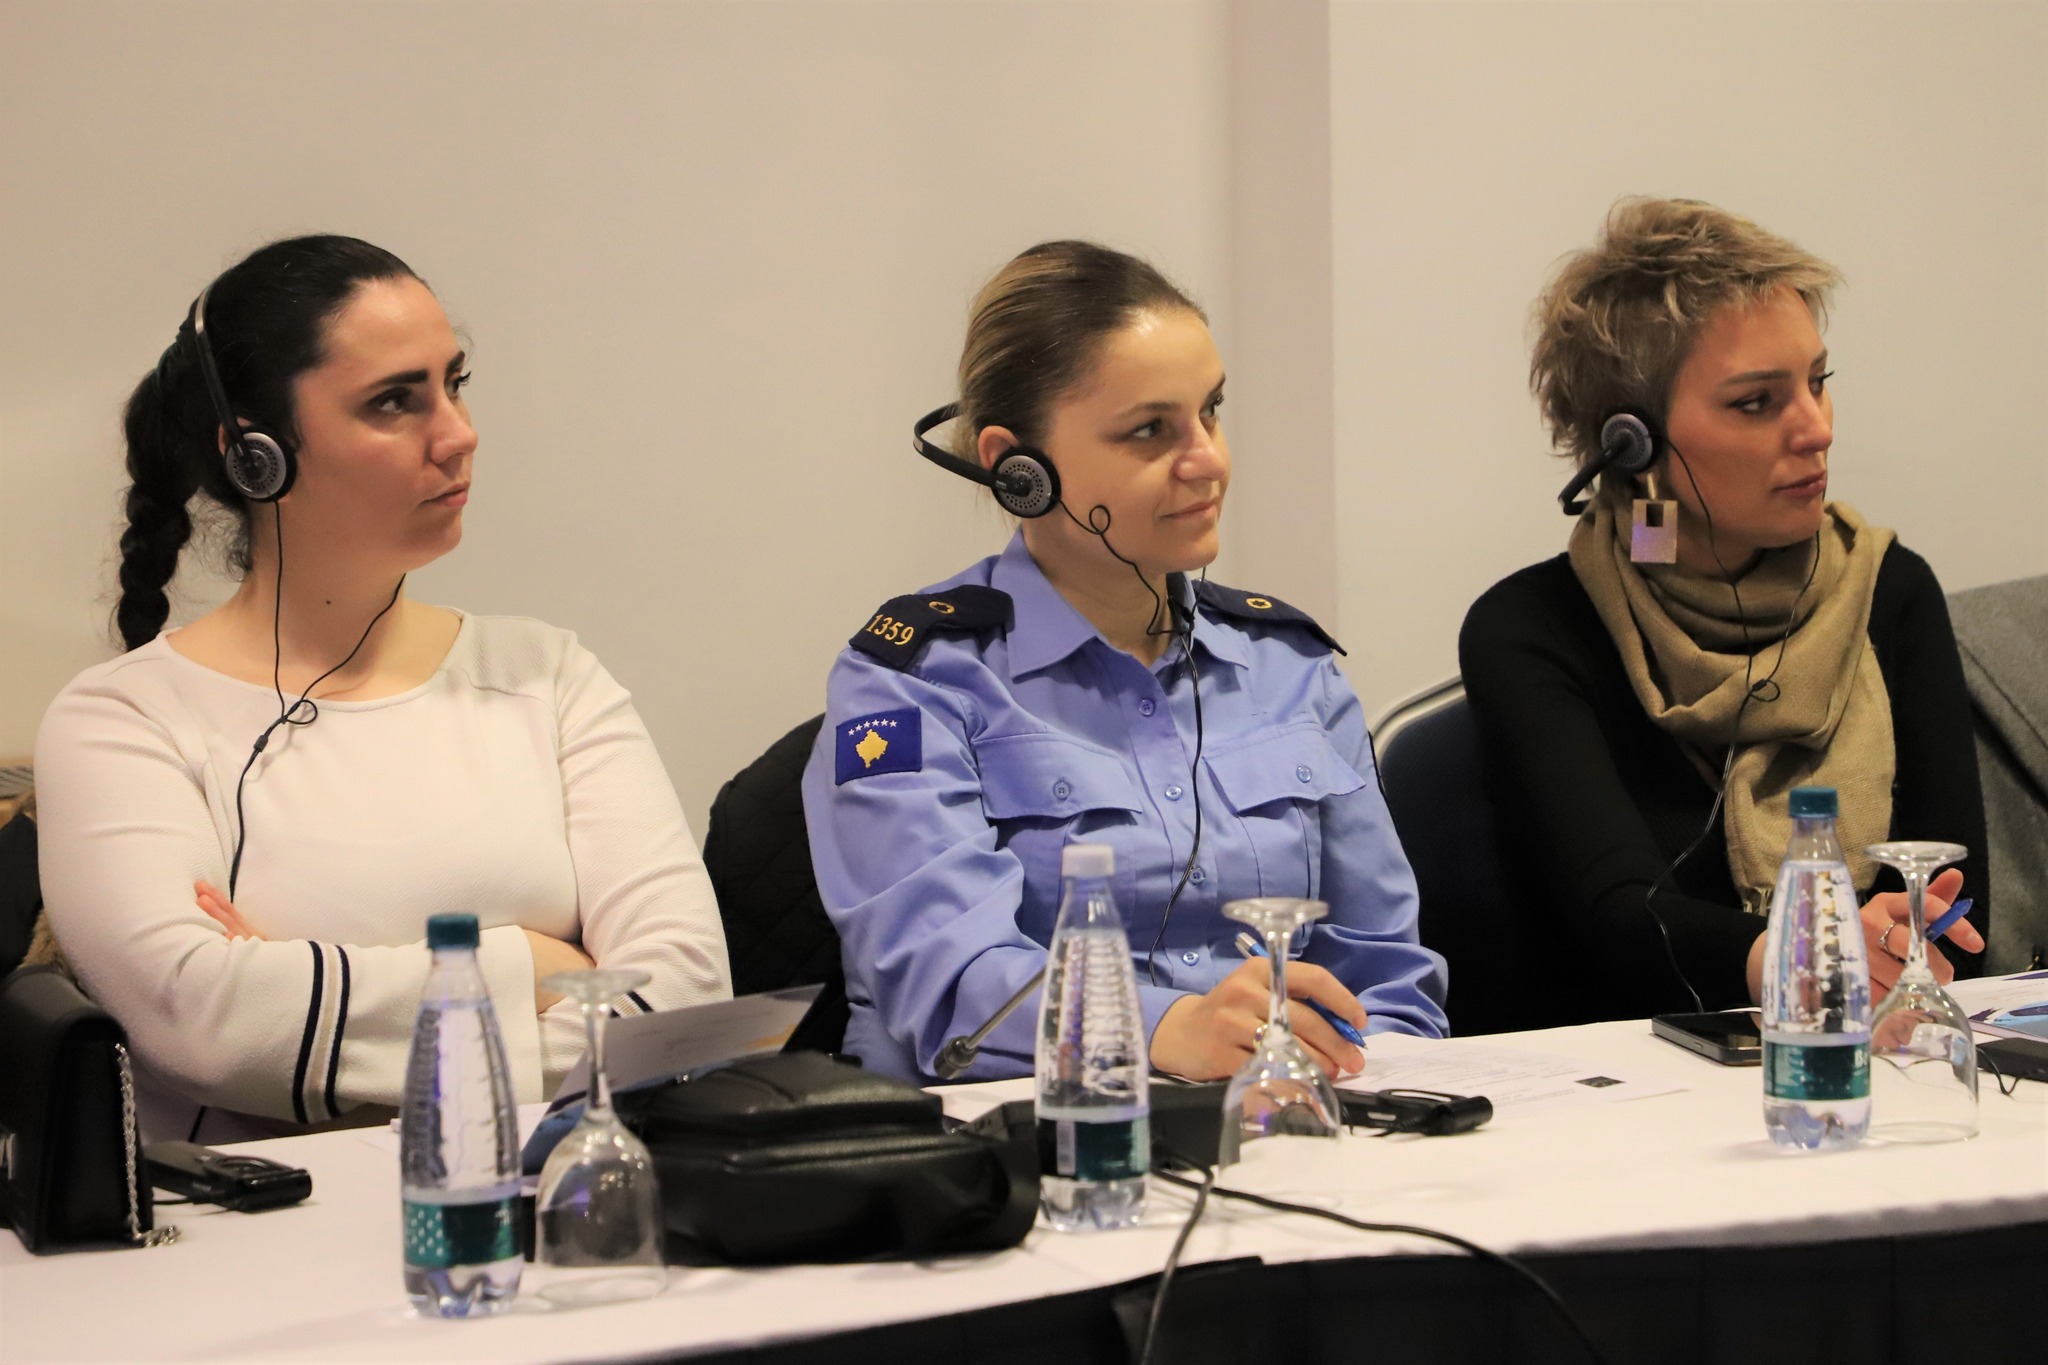 EULEX-i i mbështet institucionet e Kosovës për sundimin e ligjit në trajtimin e rasteve të abuzimit të fëmijëve dhe abuzimit seksual përmes qasjes të përqendruar te viktima